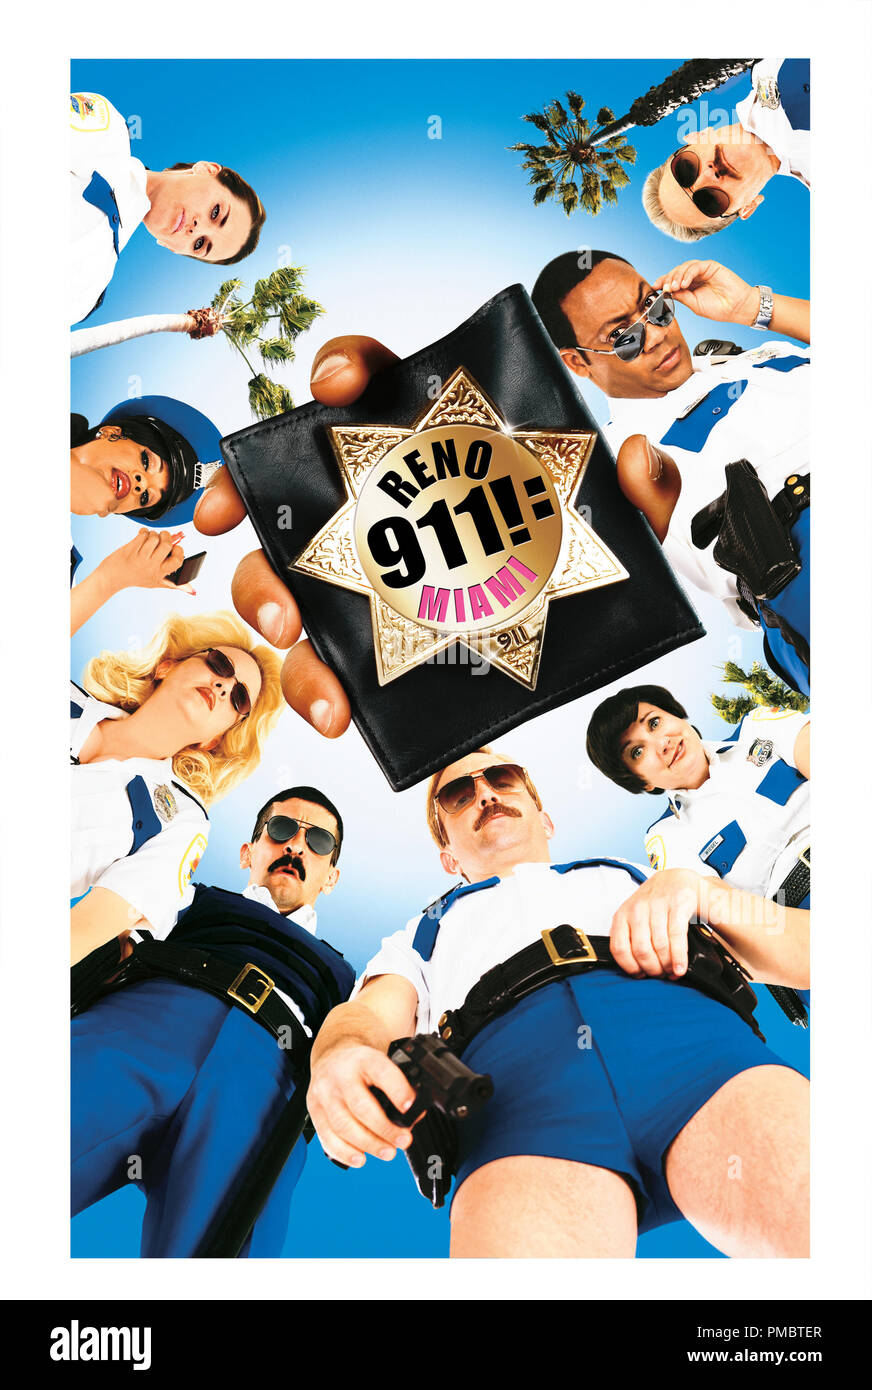 RENO 911!: MIAMI - Poster Stock Photo